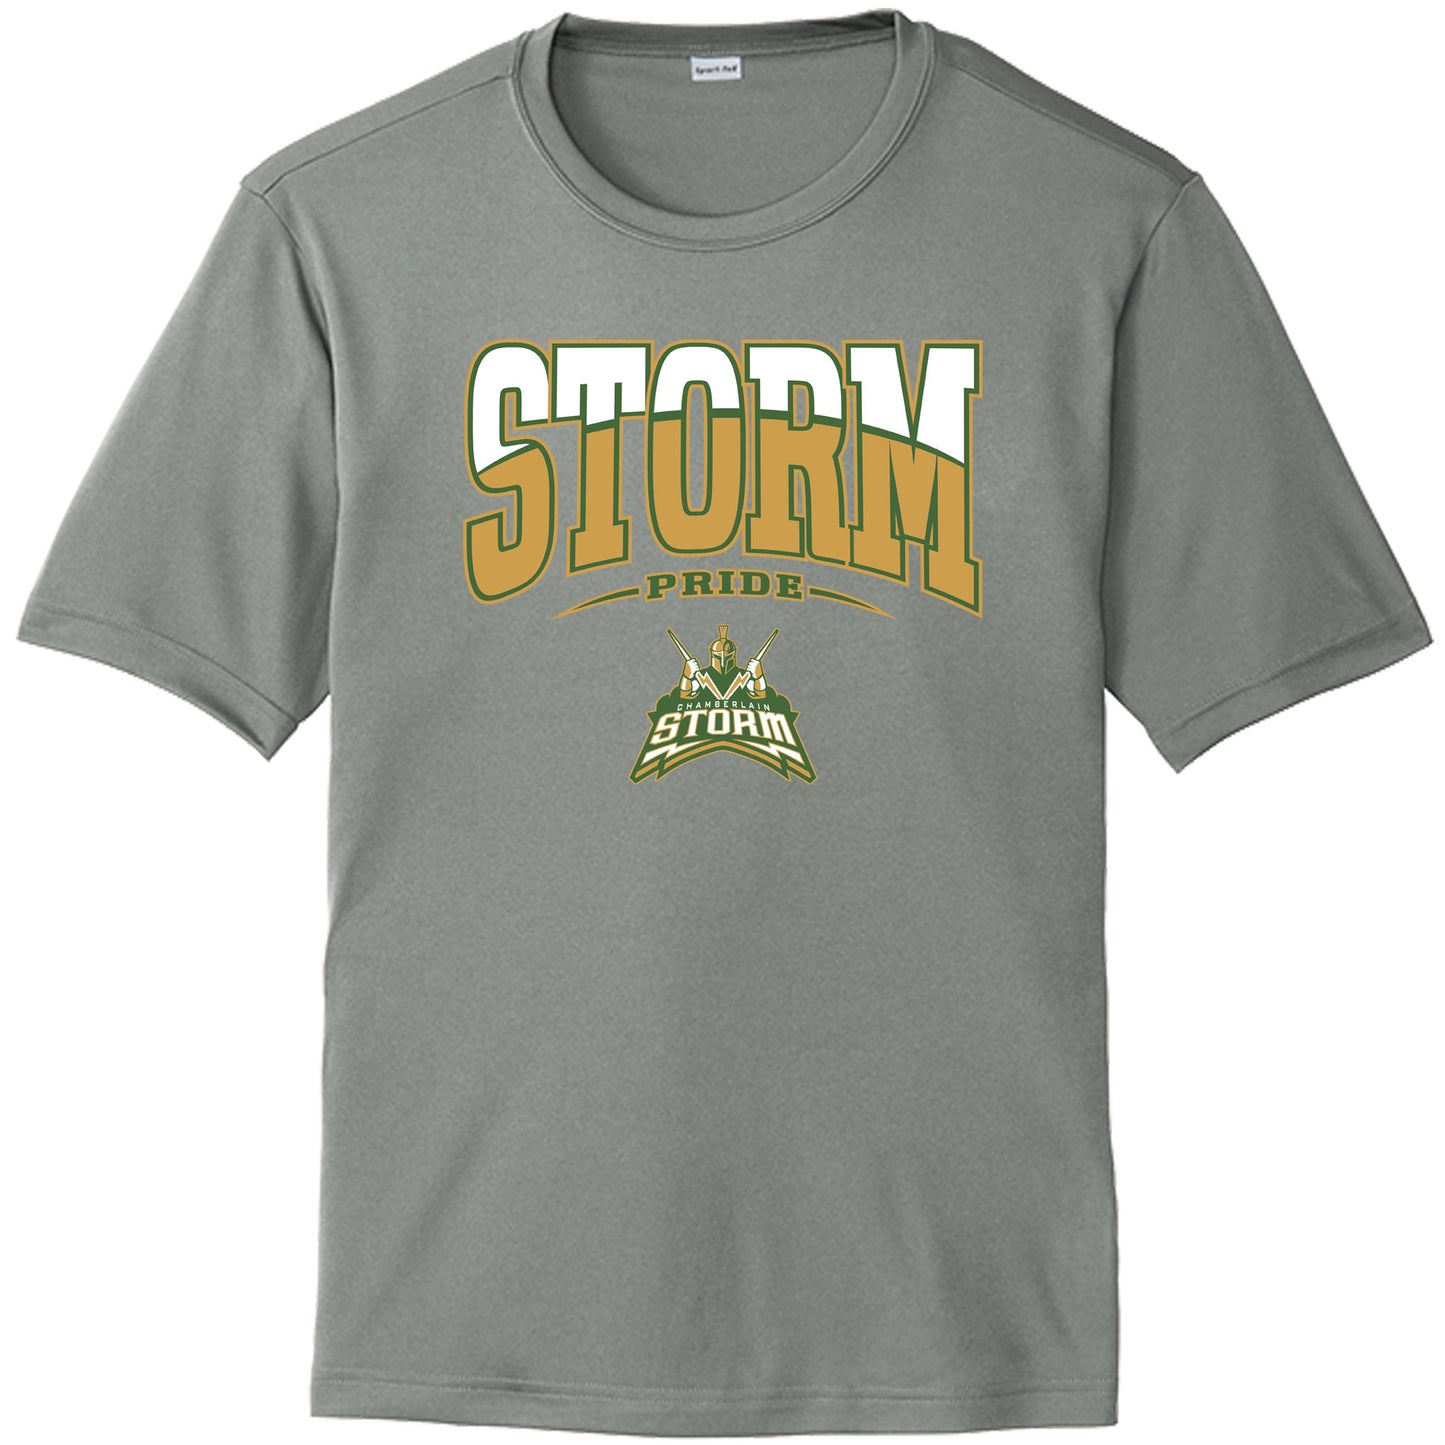 Chamberlain High School Drifit Shirt "Storm Logo"